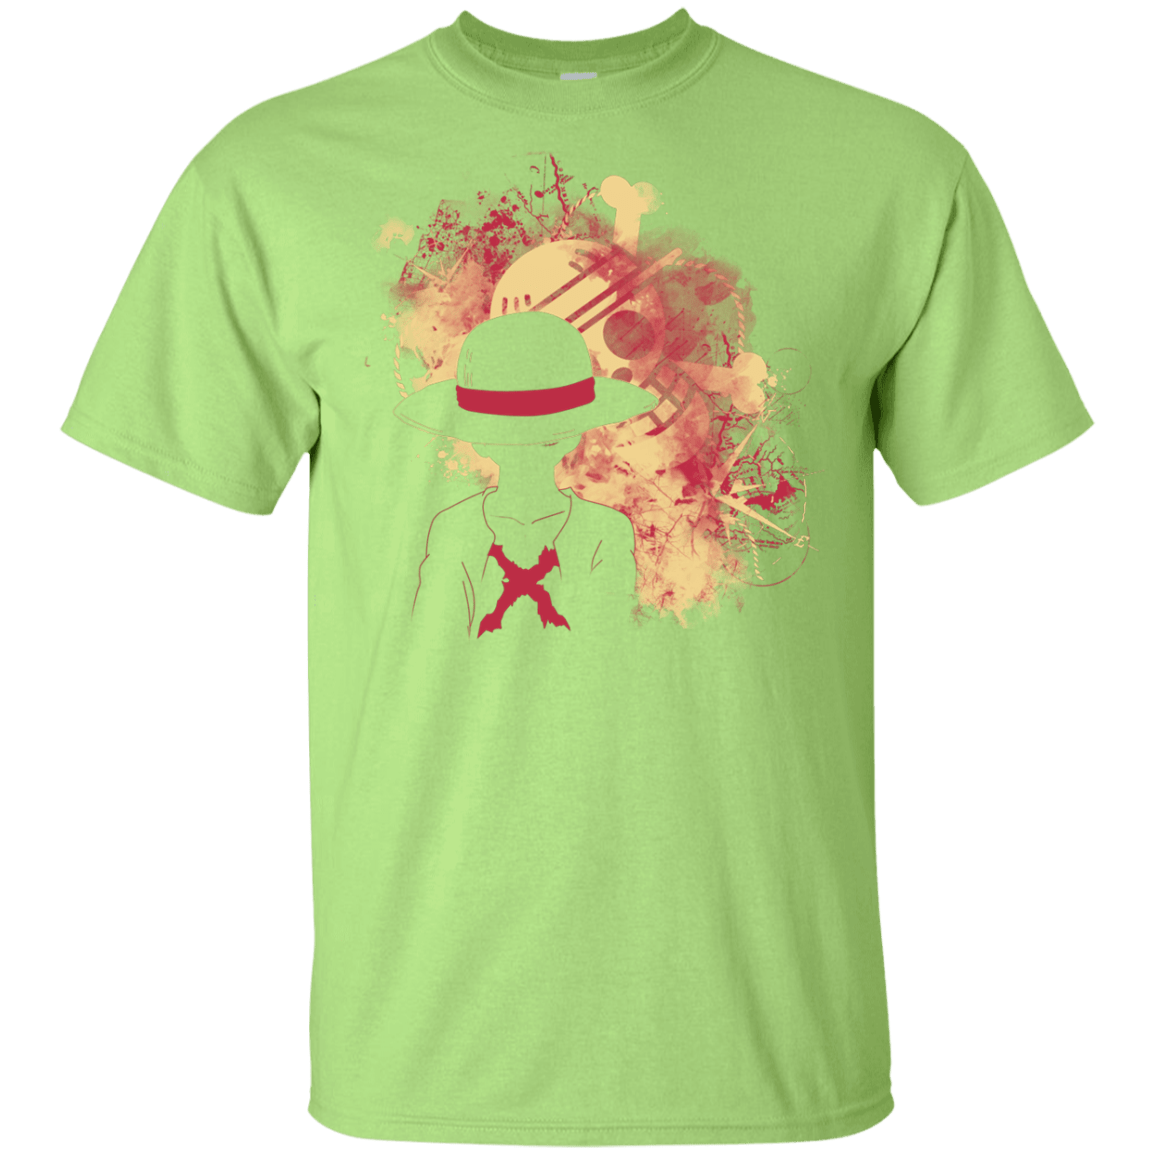 T-Shirts Mint Green / YXS Luffy 2018 Youth T-Shirt